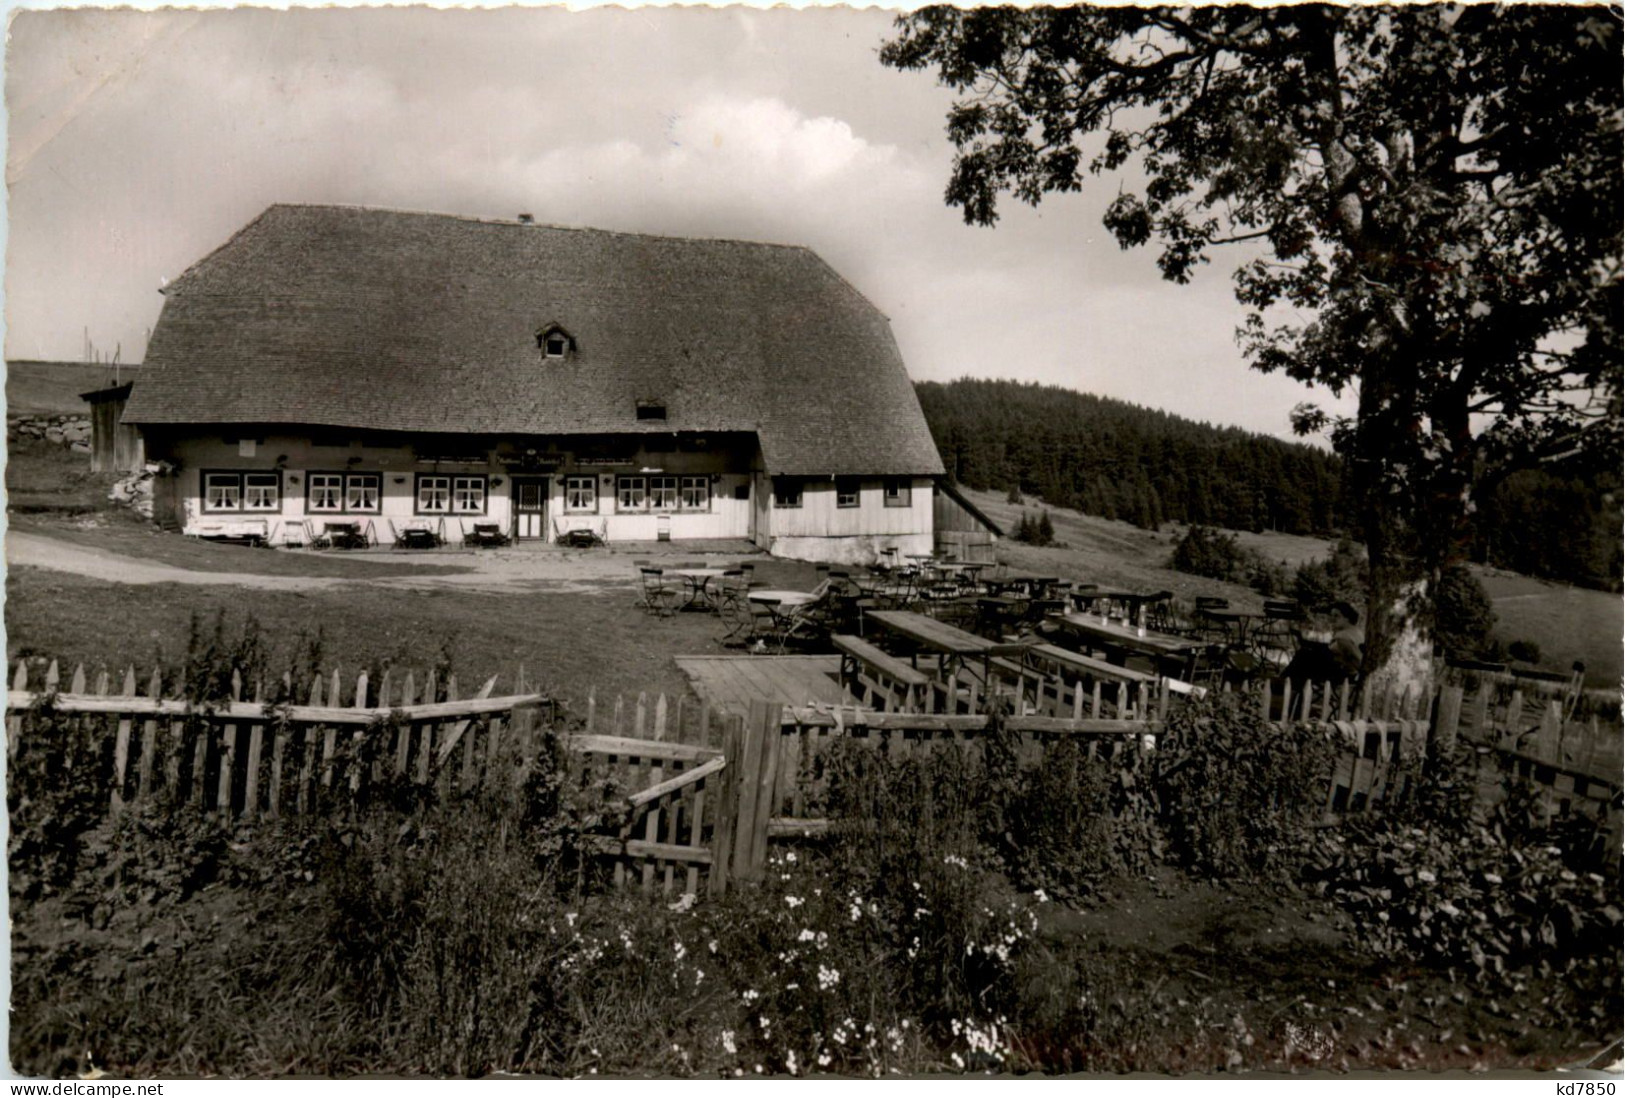 Berggasthaus Kandelhof, Waldkirch - Emmendingen